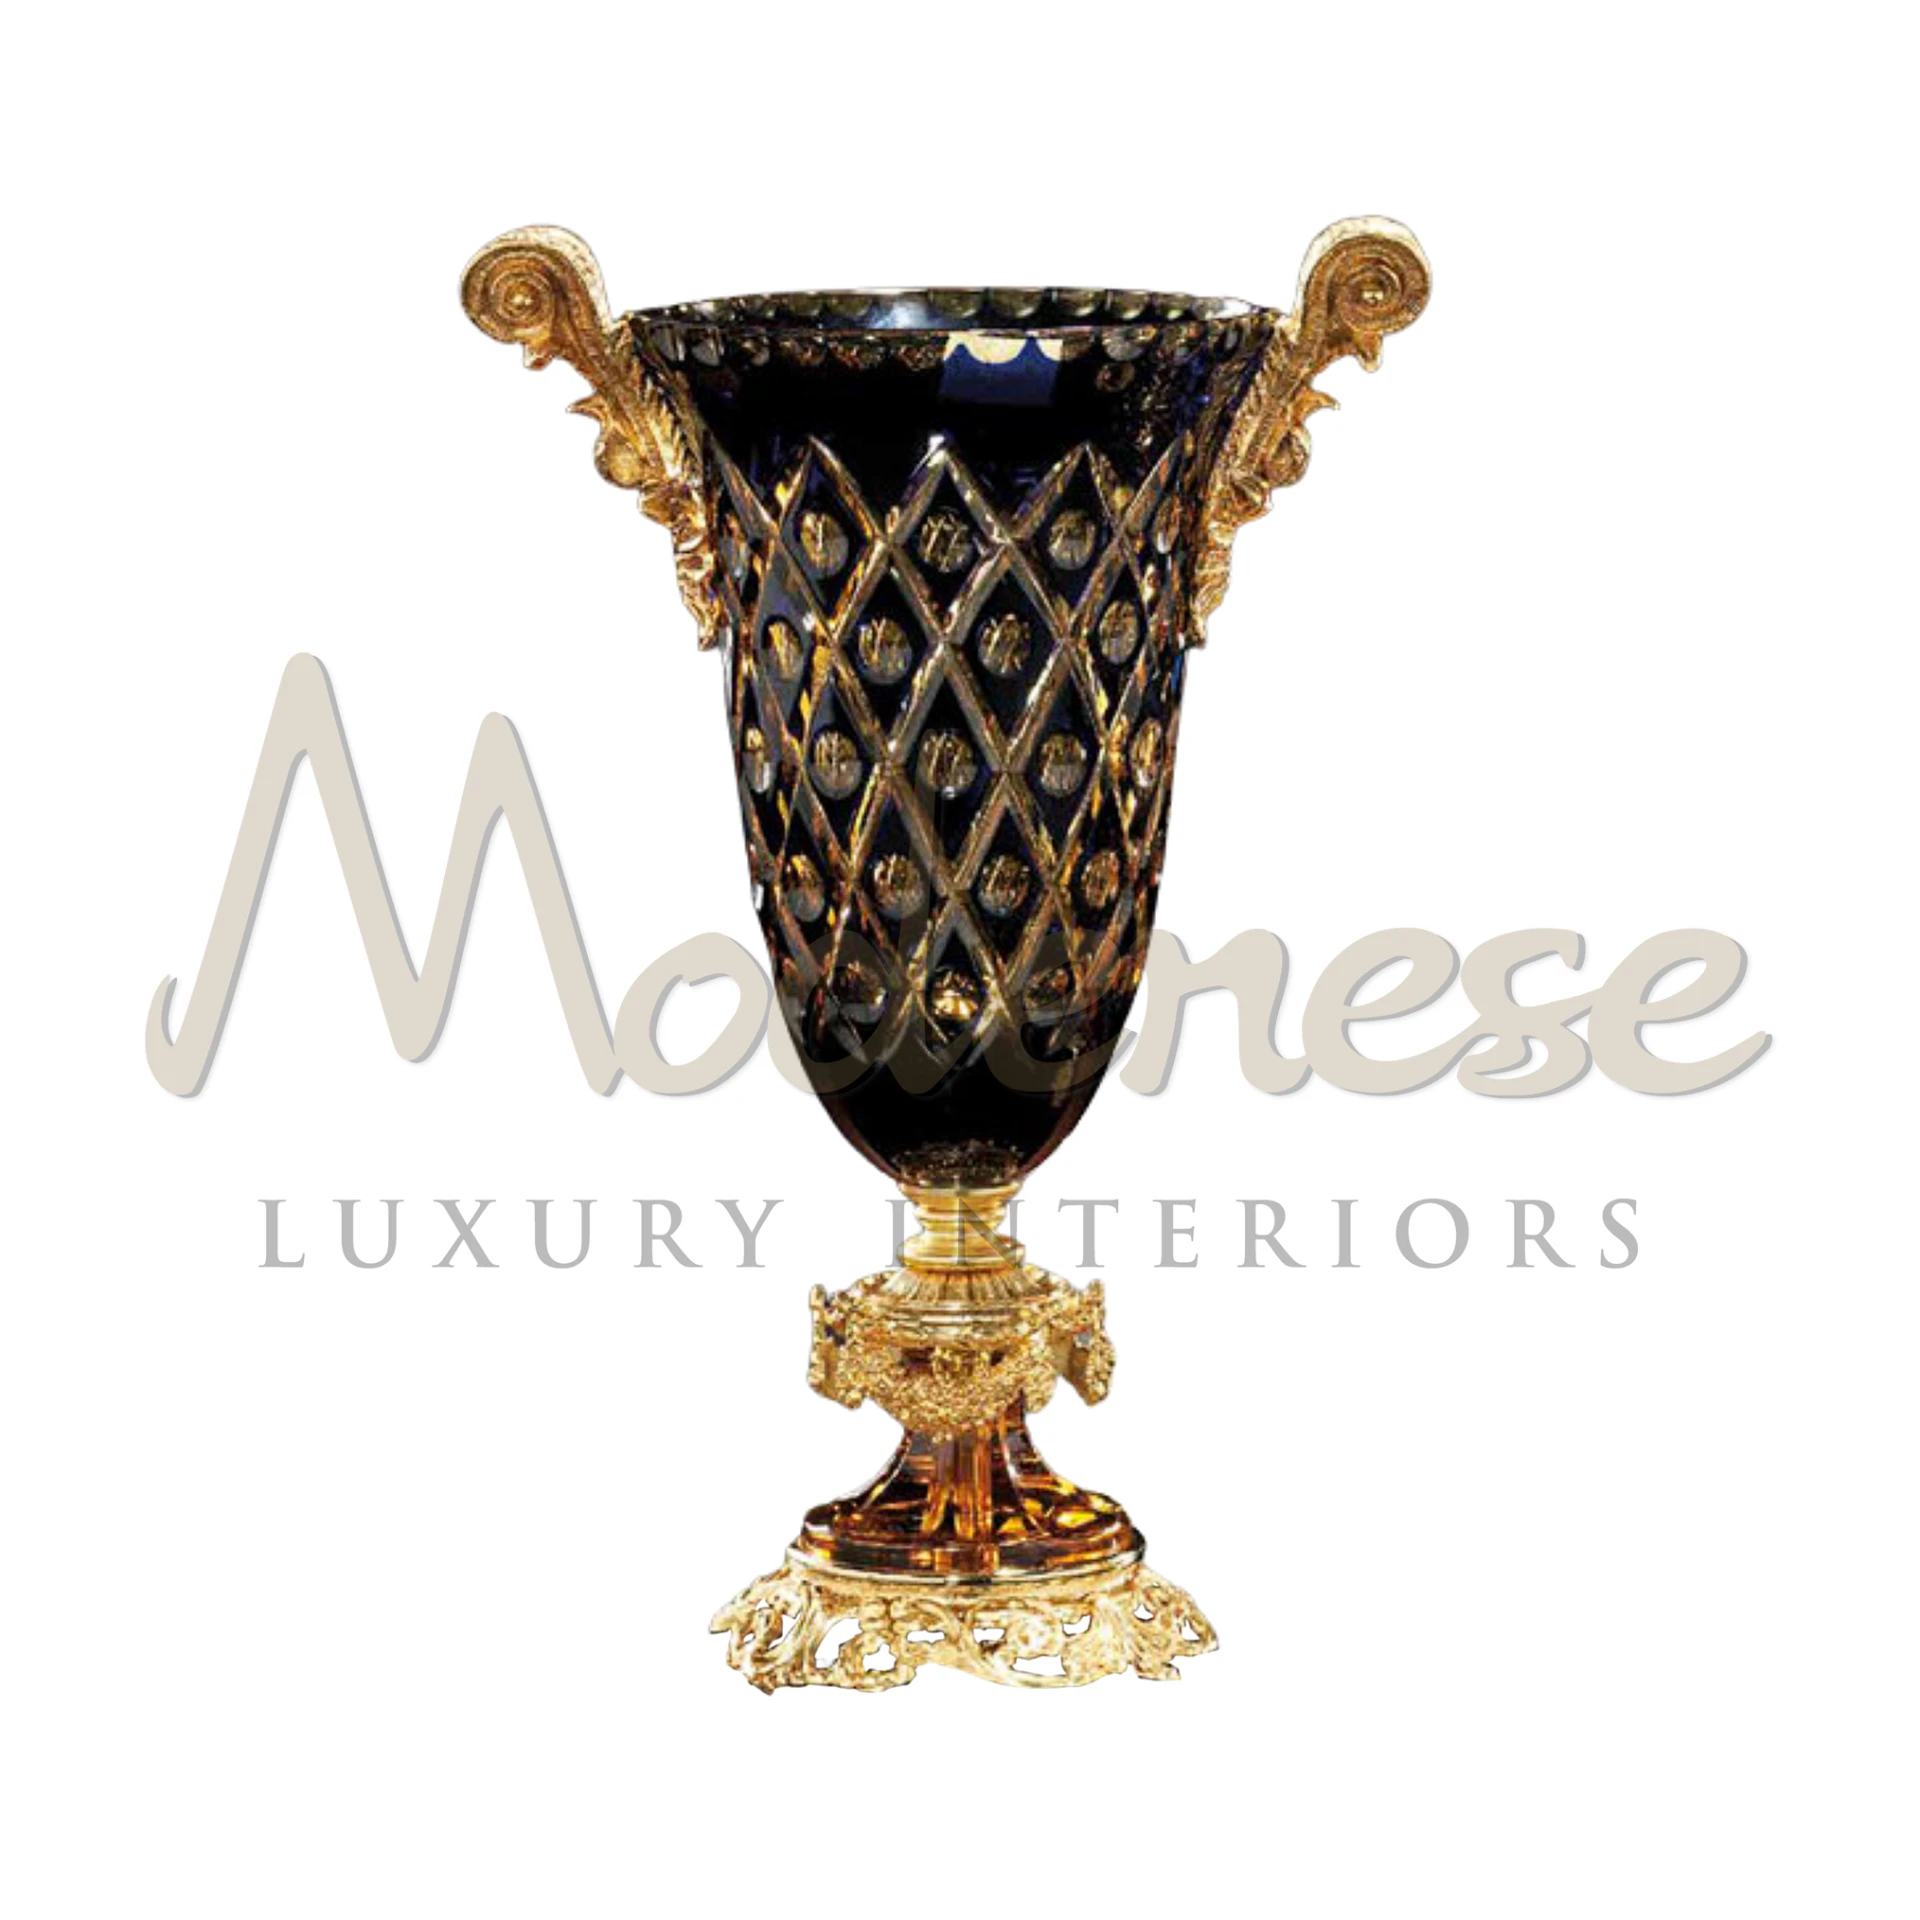 Elegant Classical Tall Black Glass Vase, slender design ideal for long-stemmed flowers, enhancing luxury interior aesthetics.